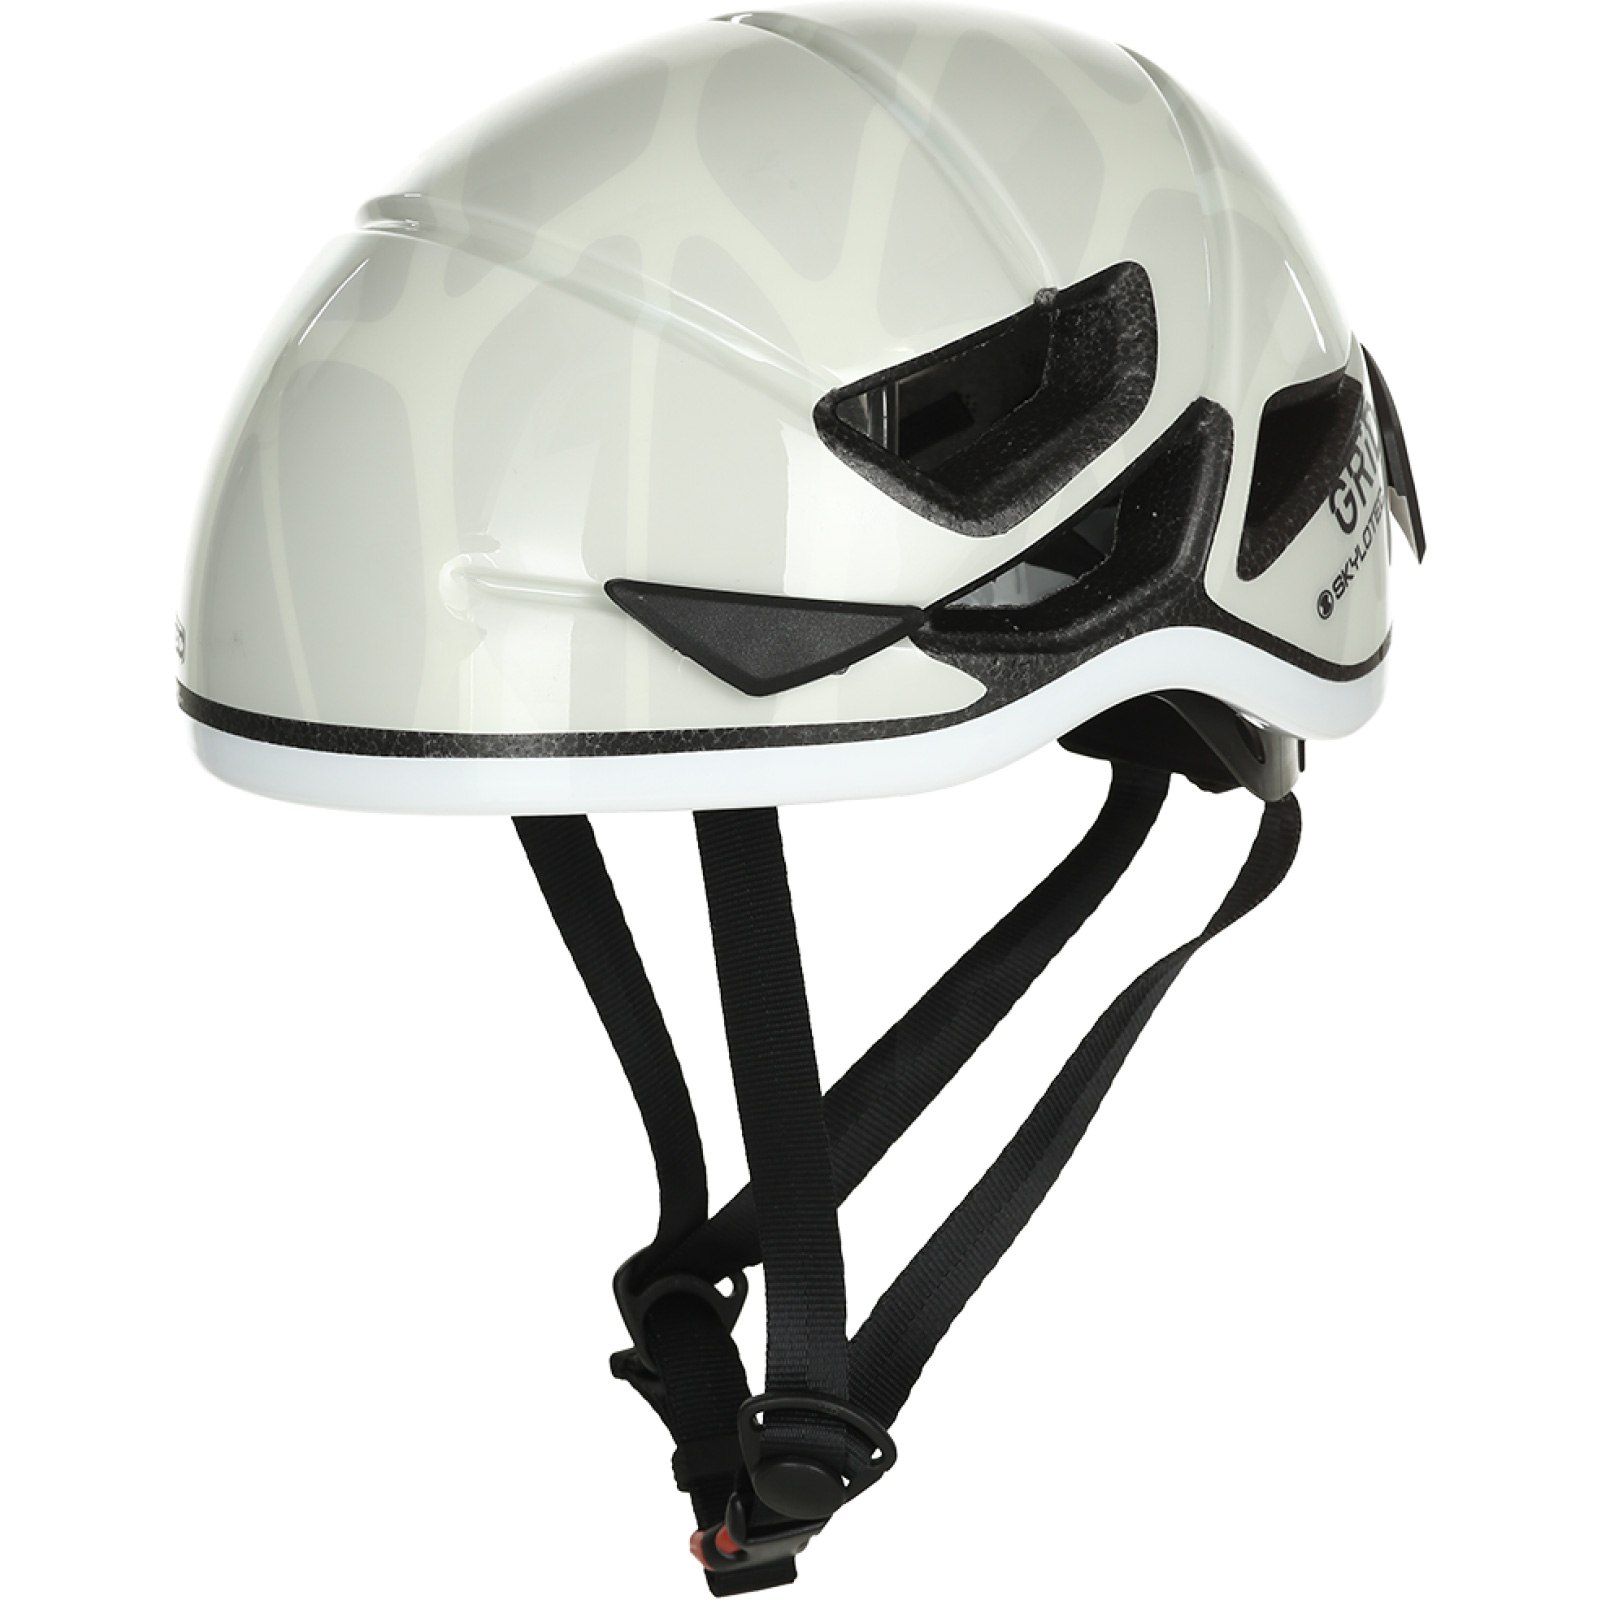 Productfoto van Skylotec grid Vent 55 Helmet - white